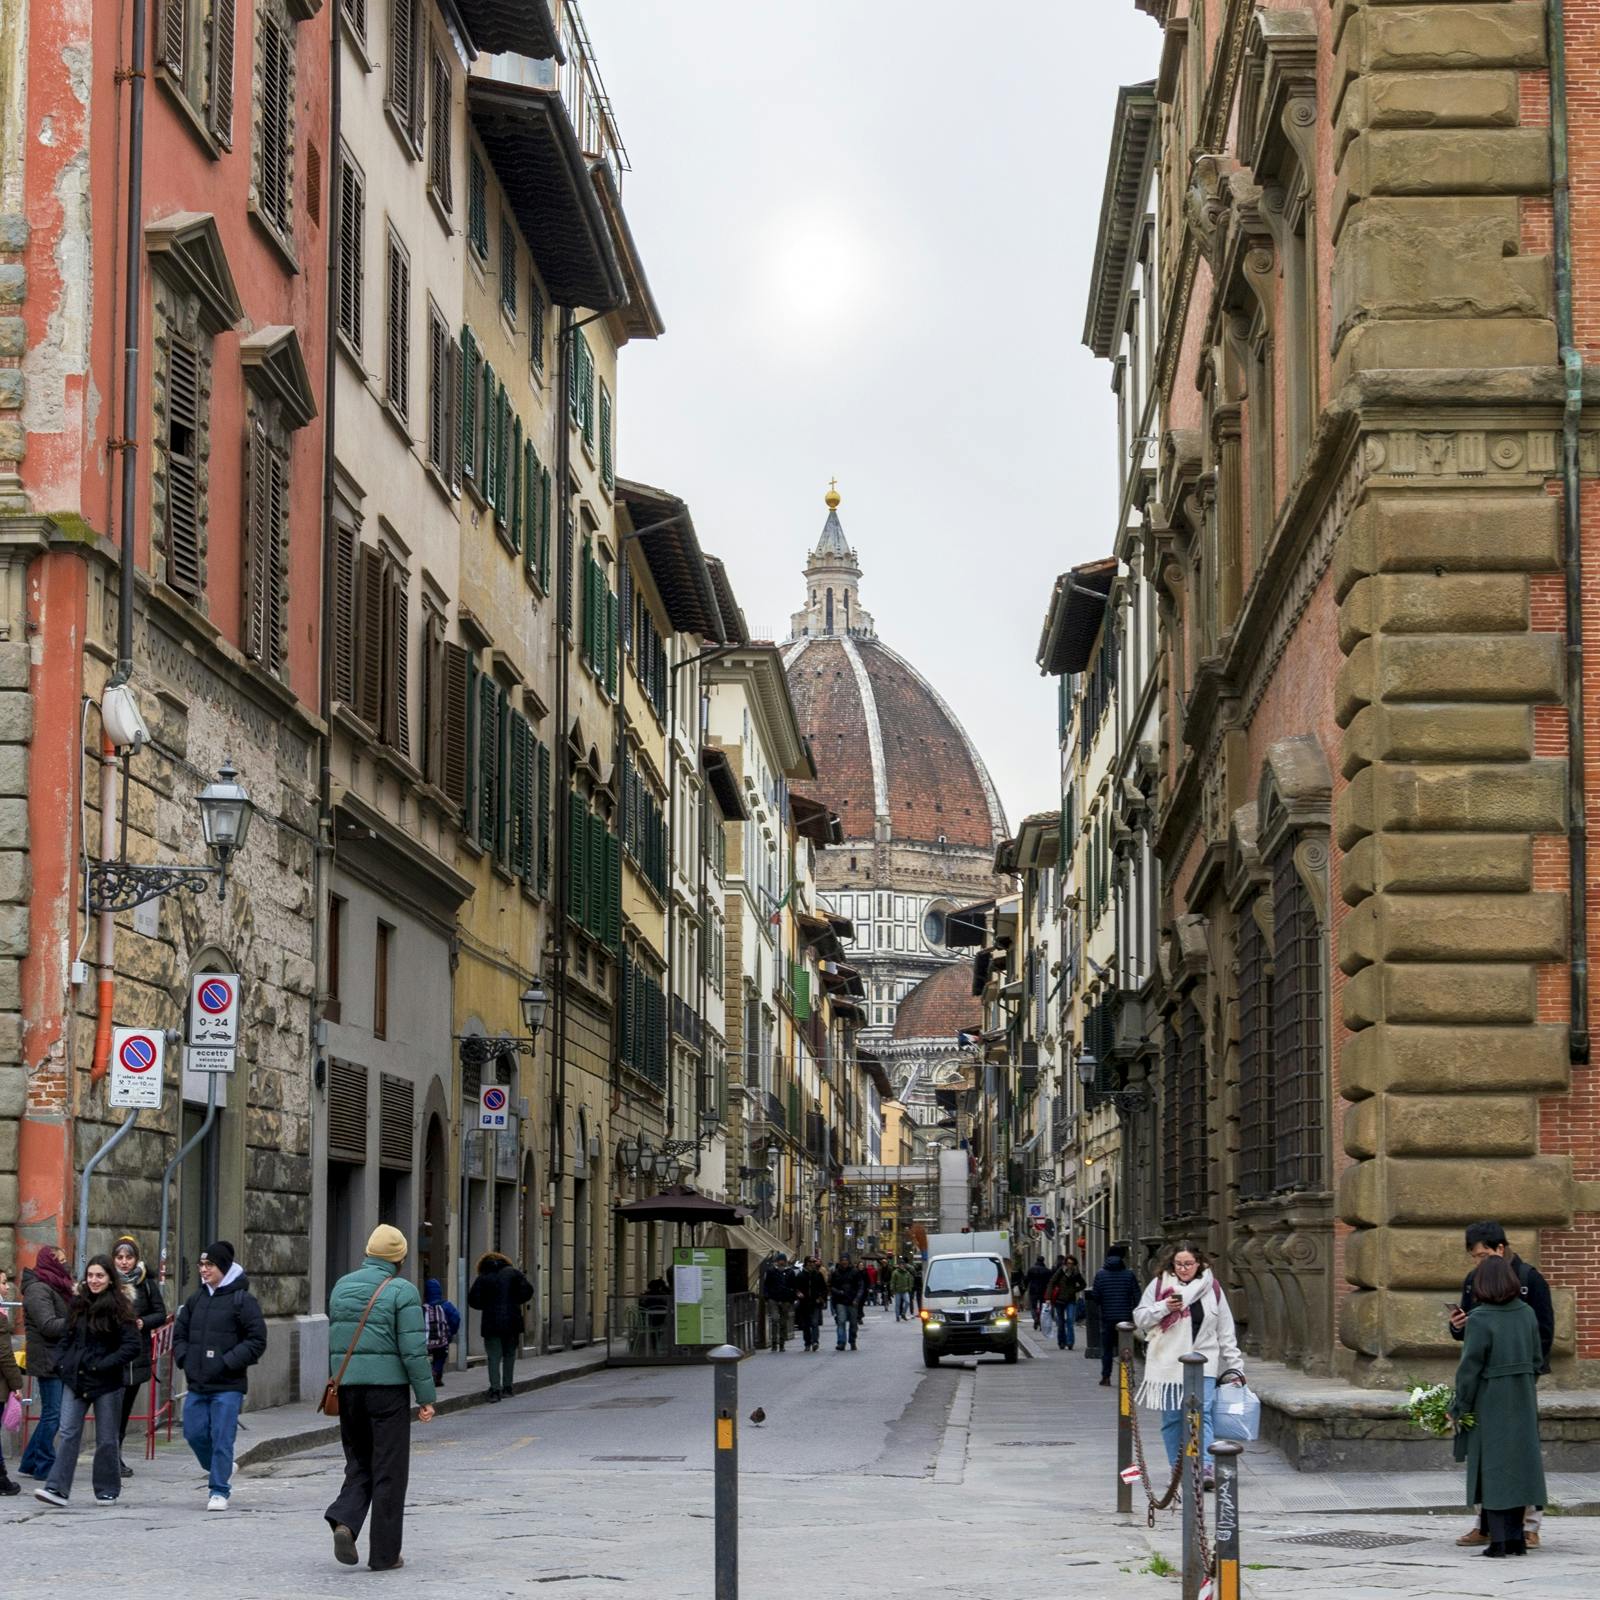 Punti salienti e gemme nascoste della passeggiata interattiva alla scoperta di Firenze